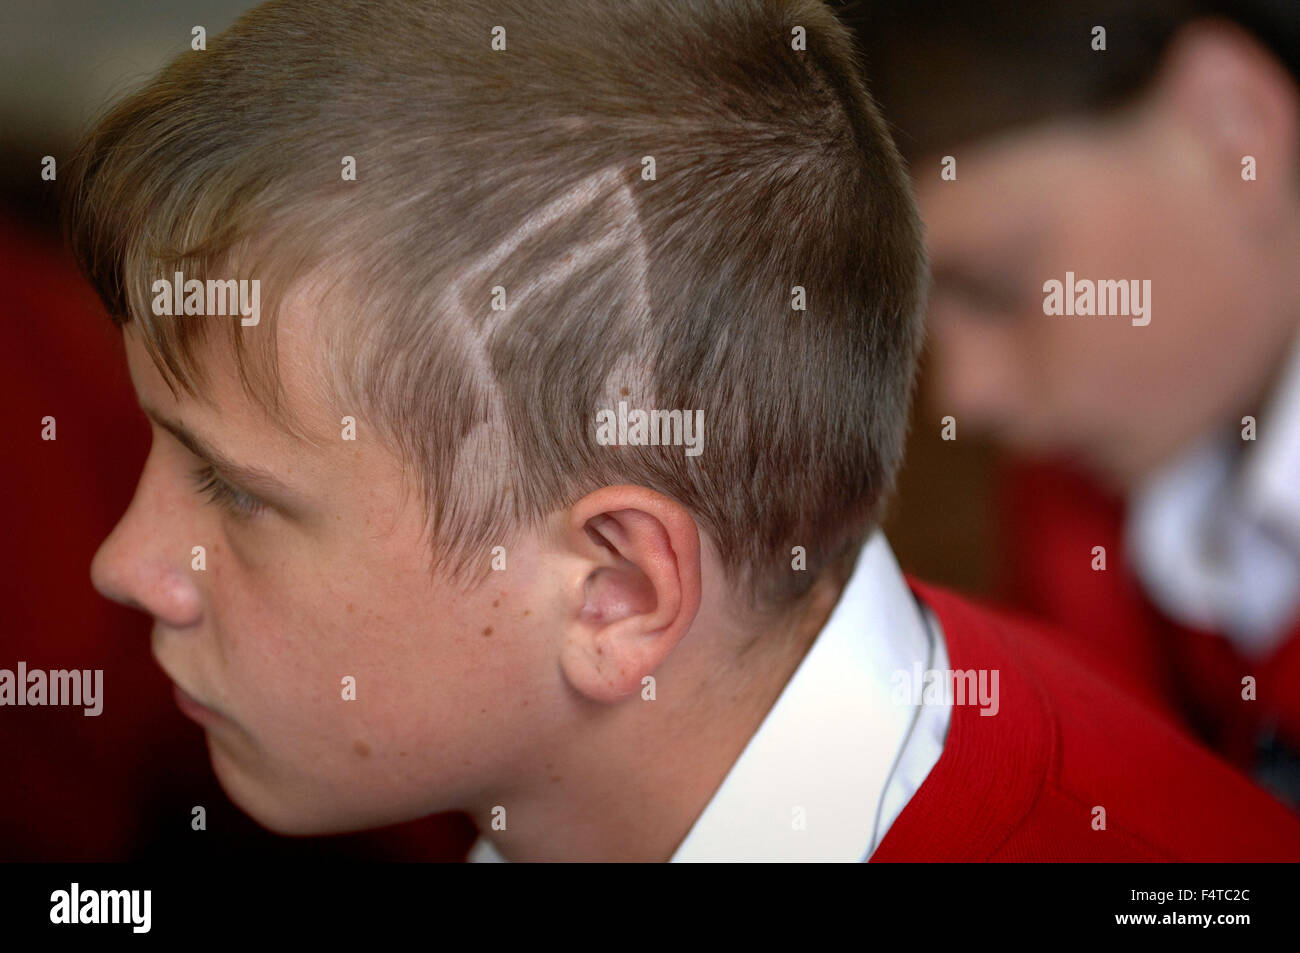 Männliche Kursteilnehmer mit einem musikalischen Hinweis rasiert in seinen Kopf, was gegen Schulpolitik und könnte ihn ausgeschlossen oder verboten. Stockfoto